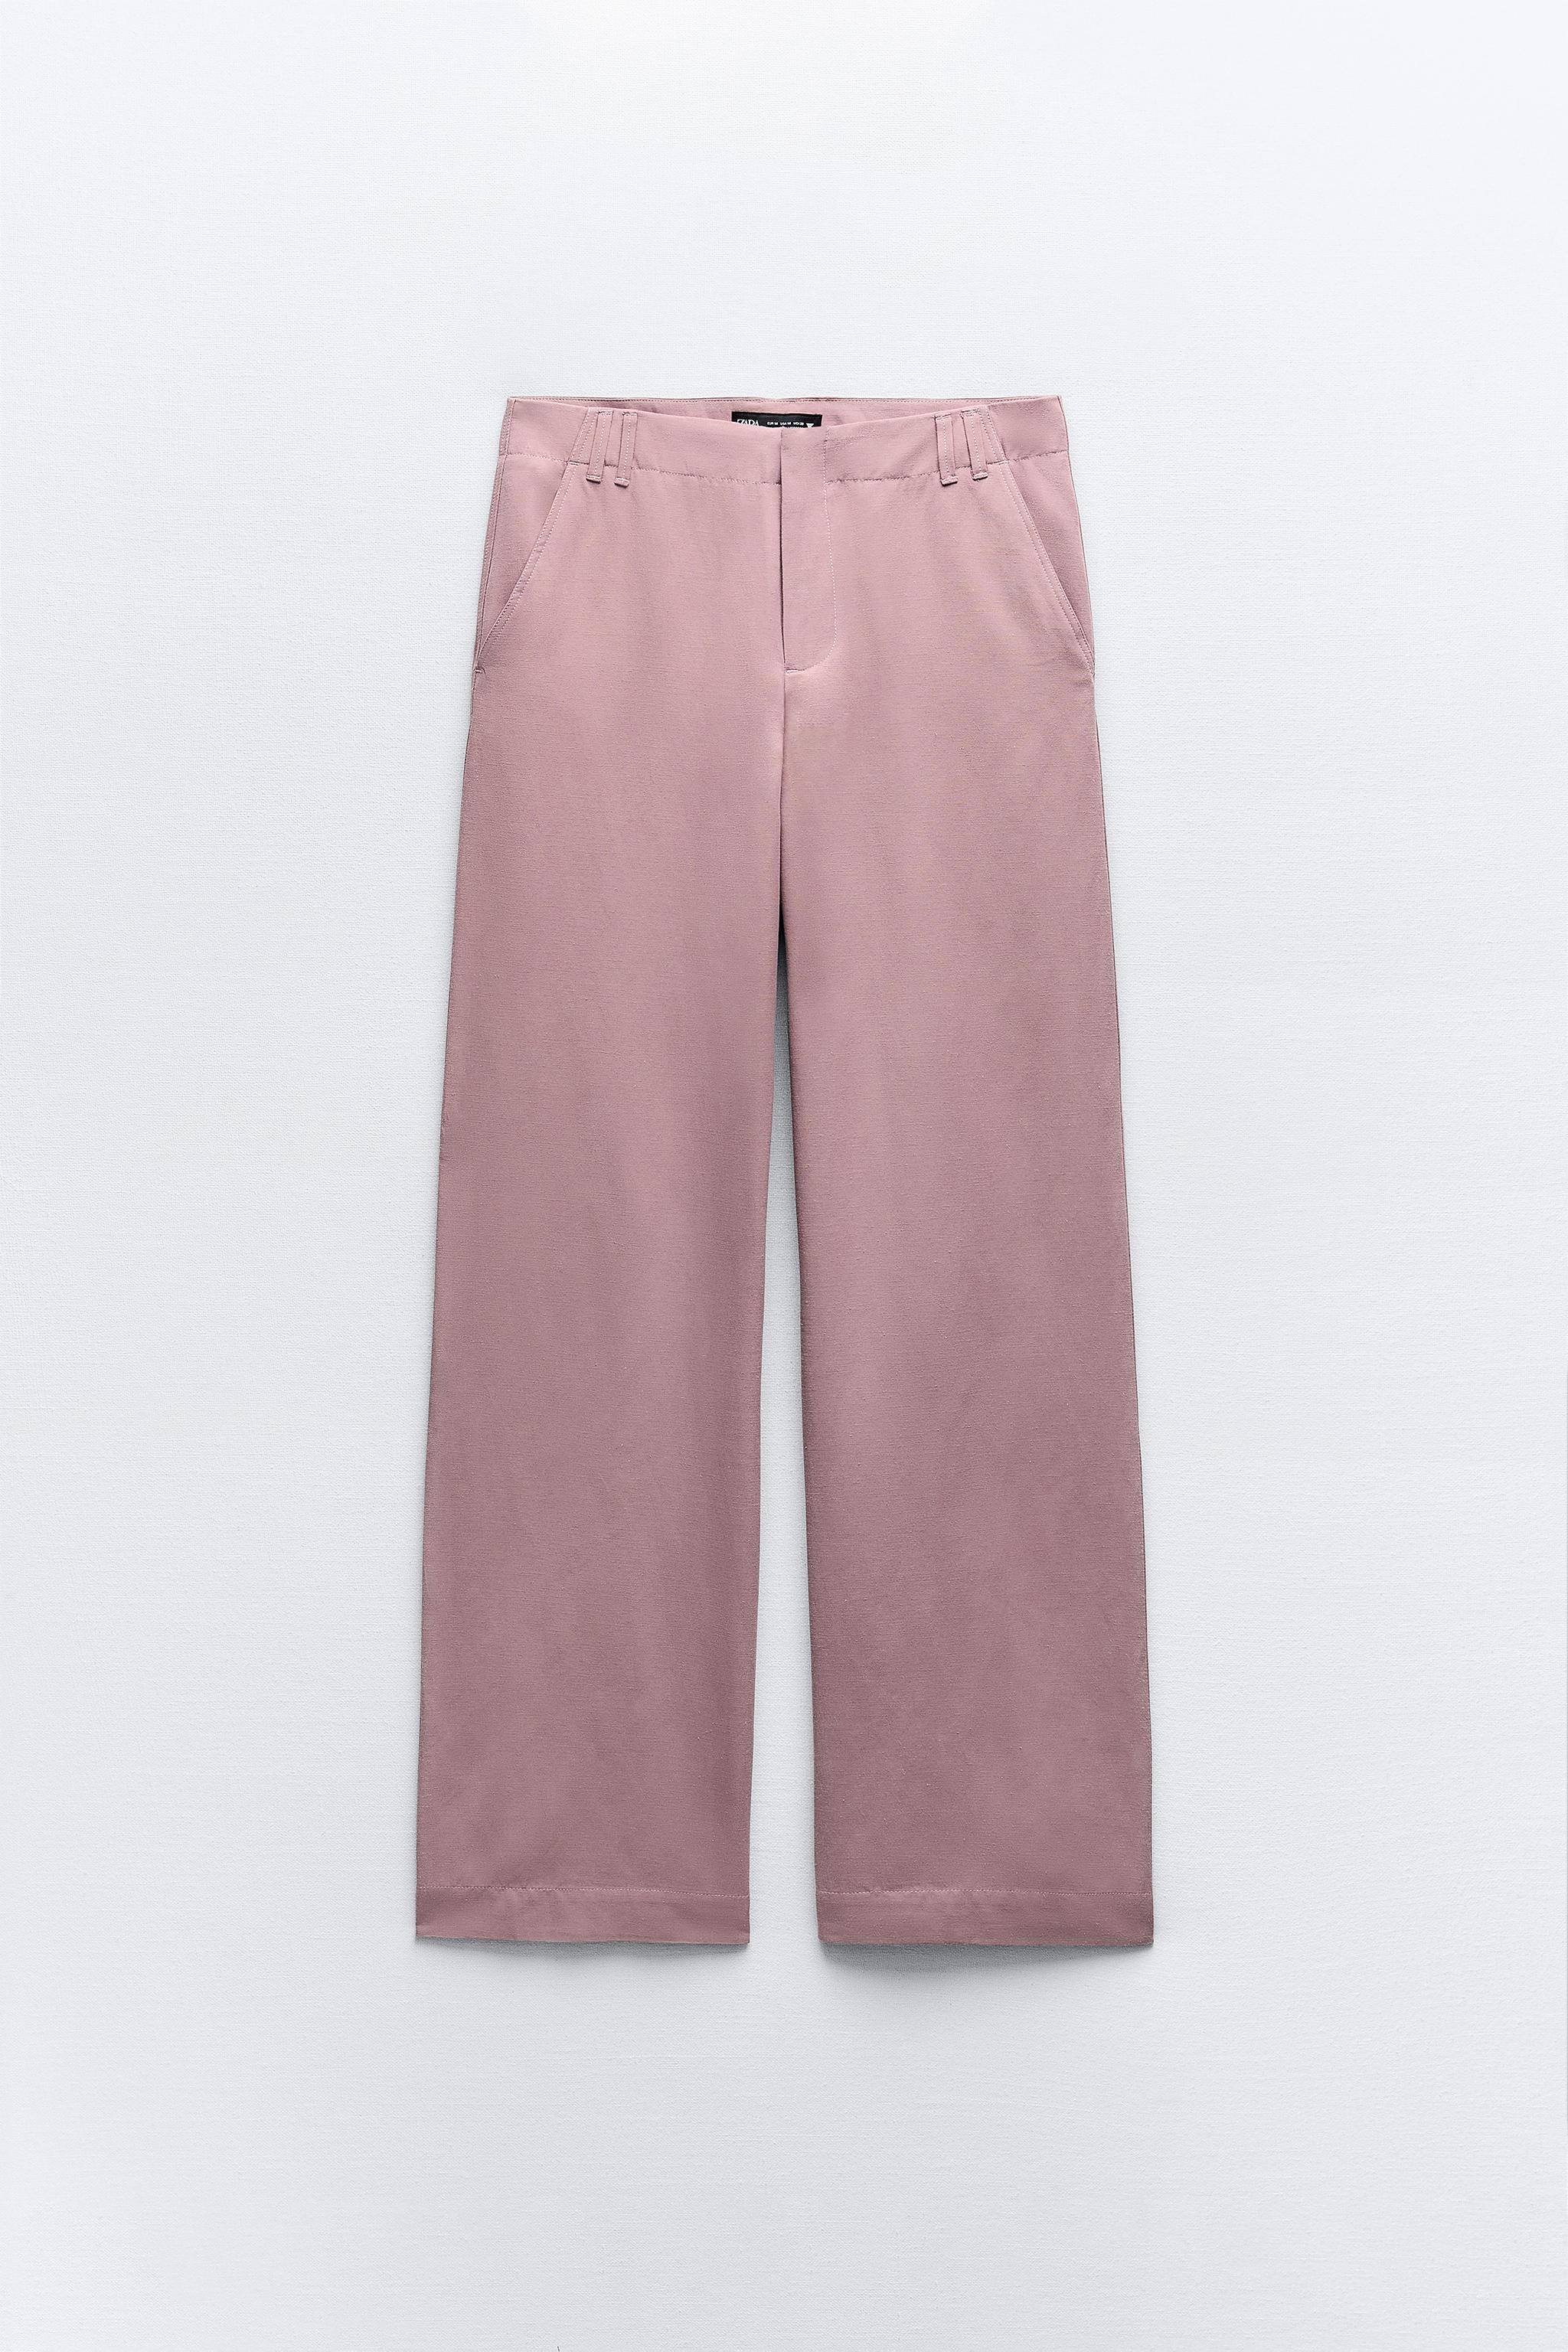 Calça Alfaiataria Imitação Zara Pink - GRINGAS STORE